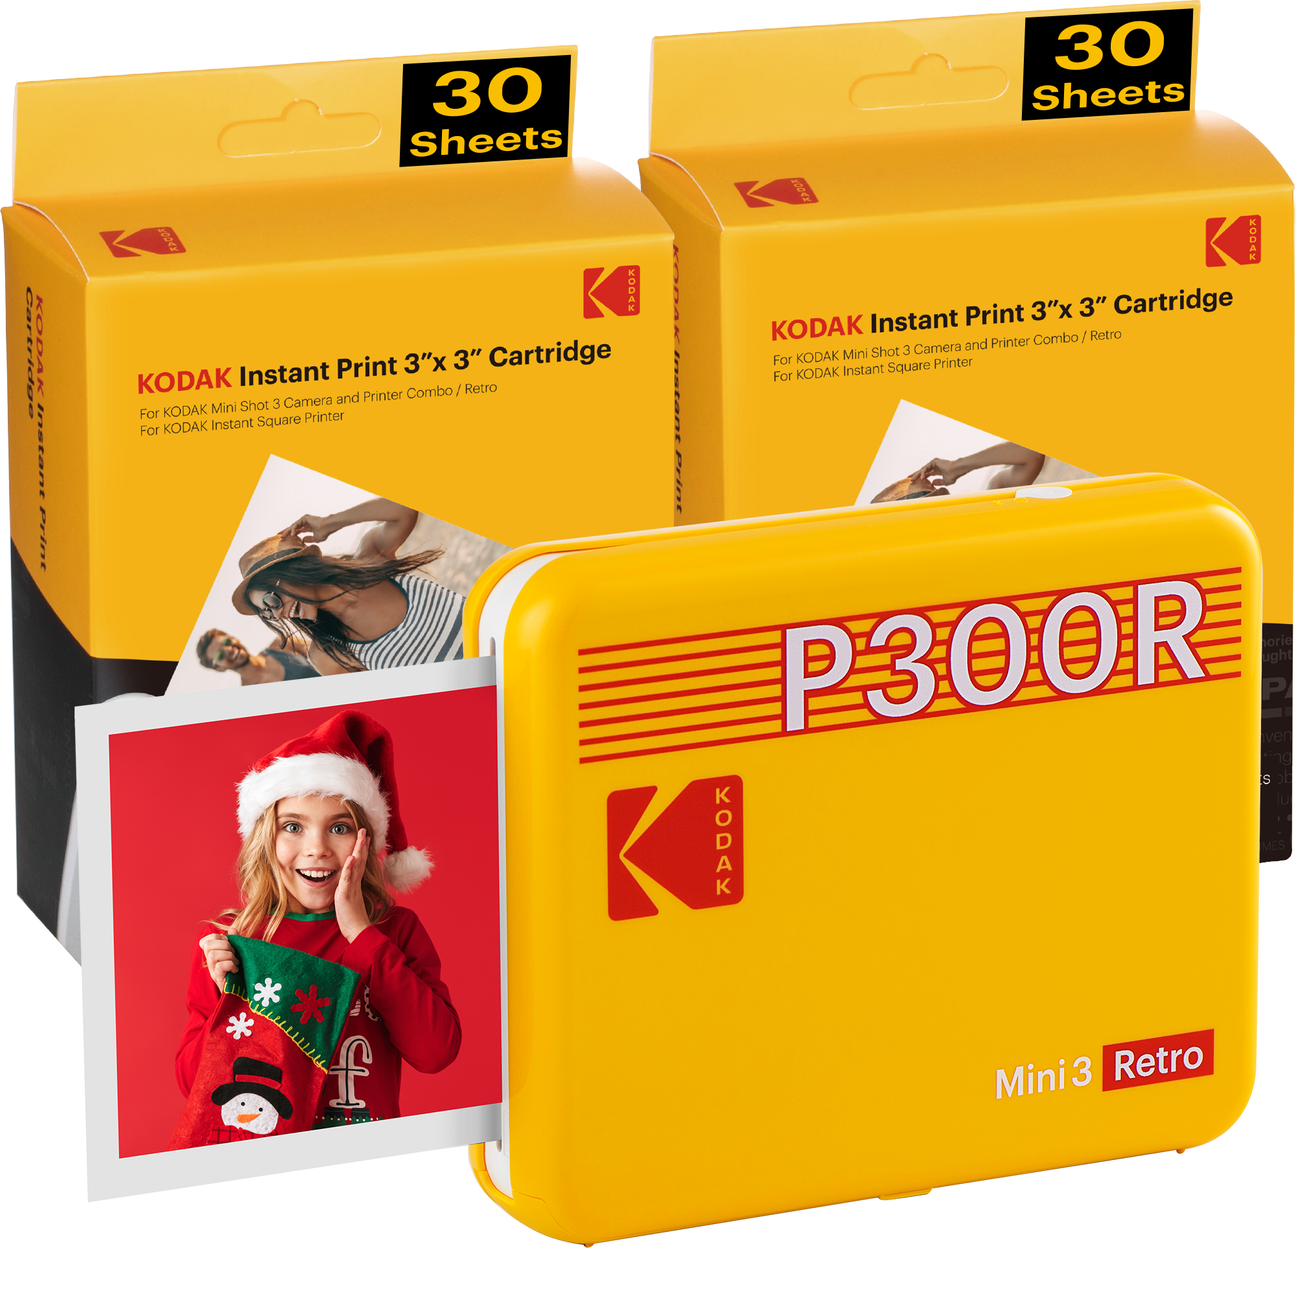 Máy in ảnh Kodak Mini 3 P300R - tặng kèm 60 tấm ảnh